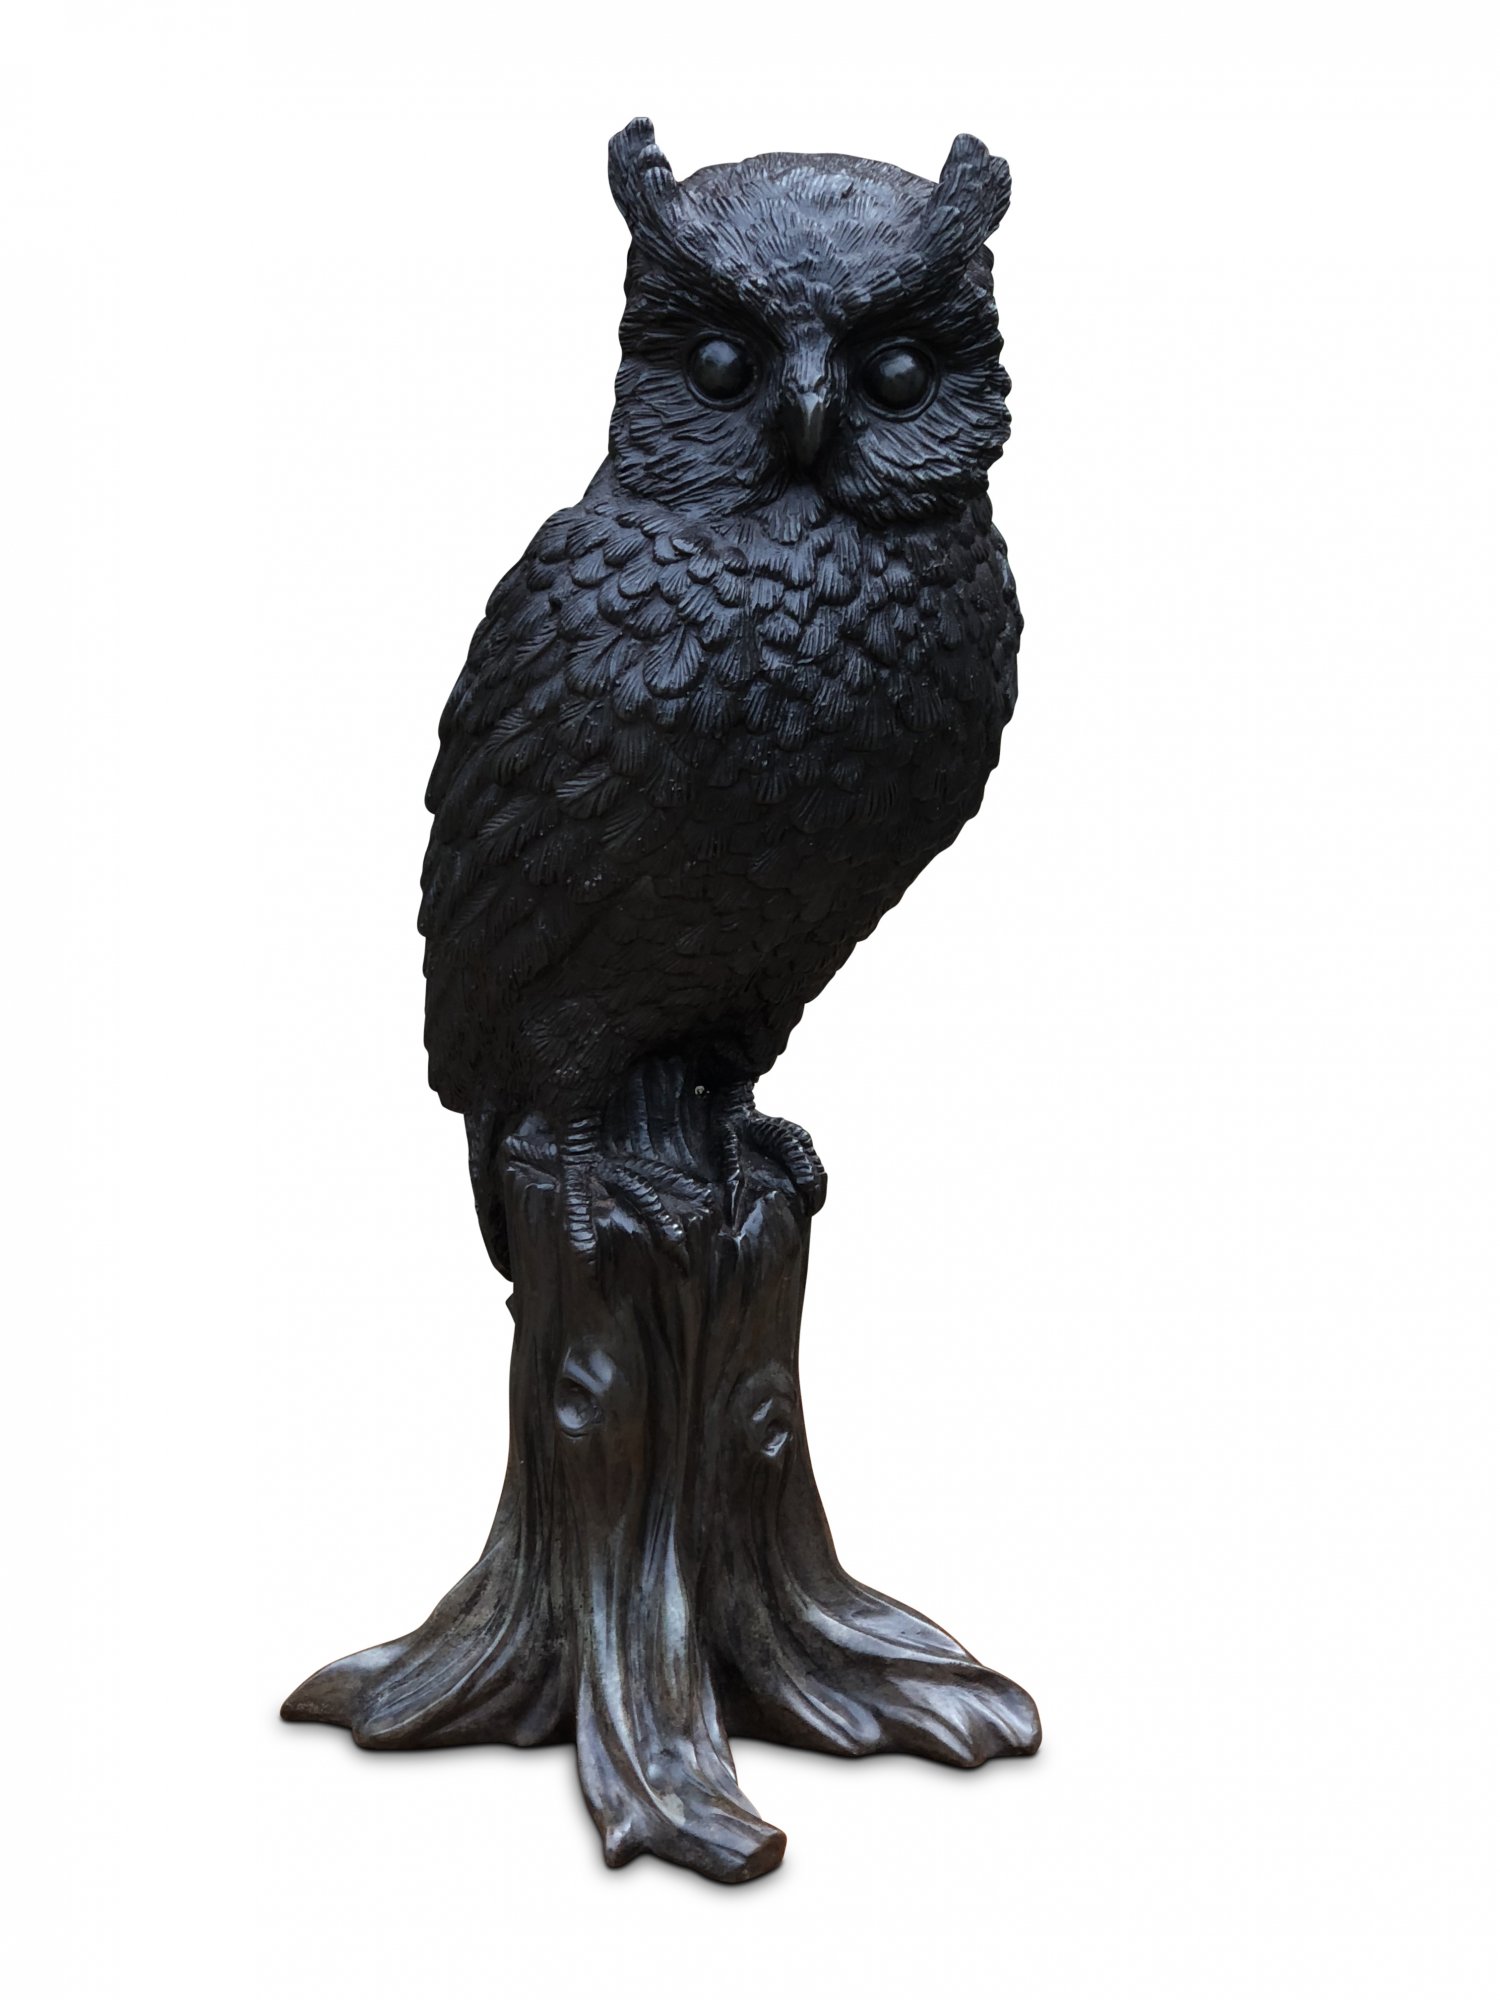 Early Twentieth Century Bronze Owl on Stump